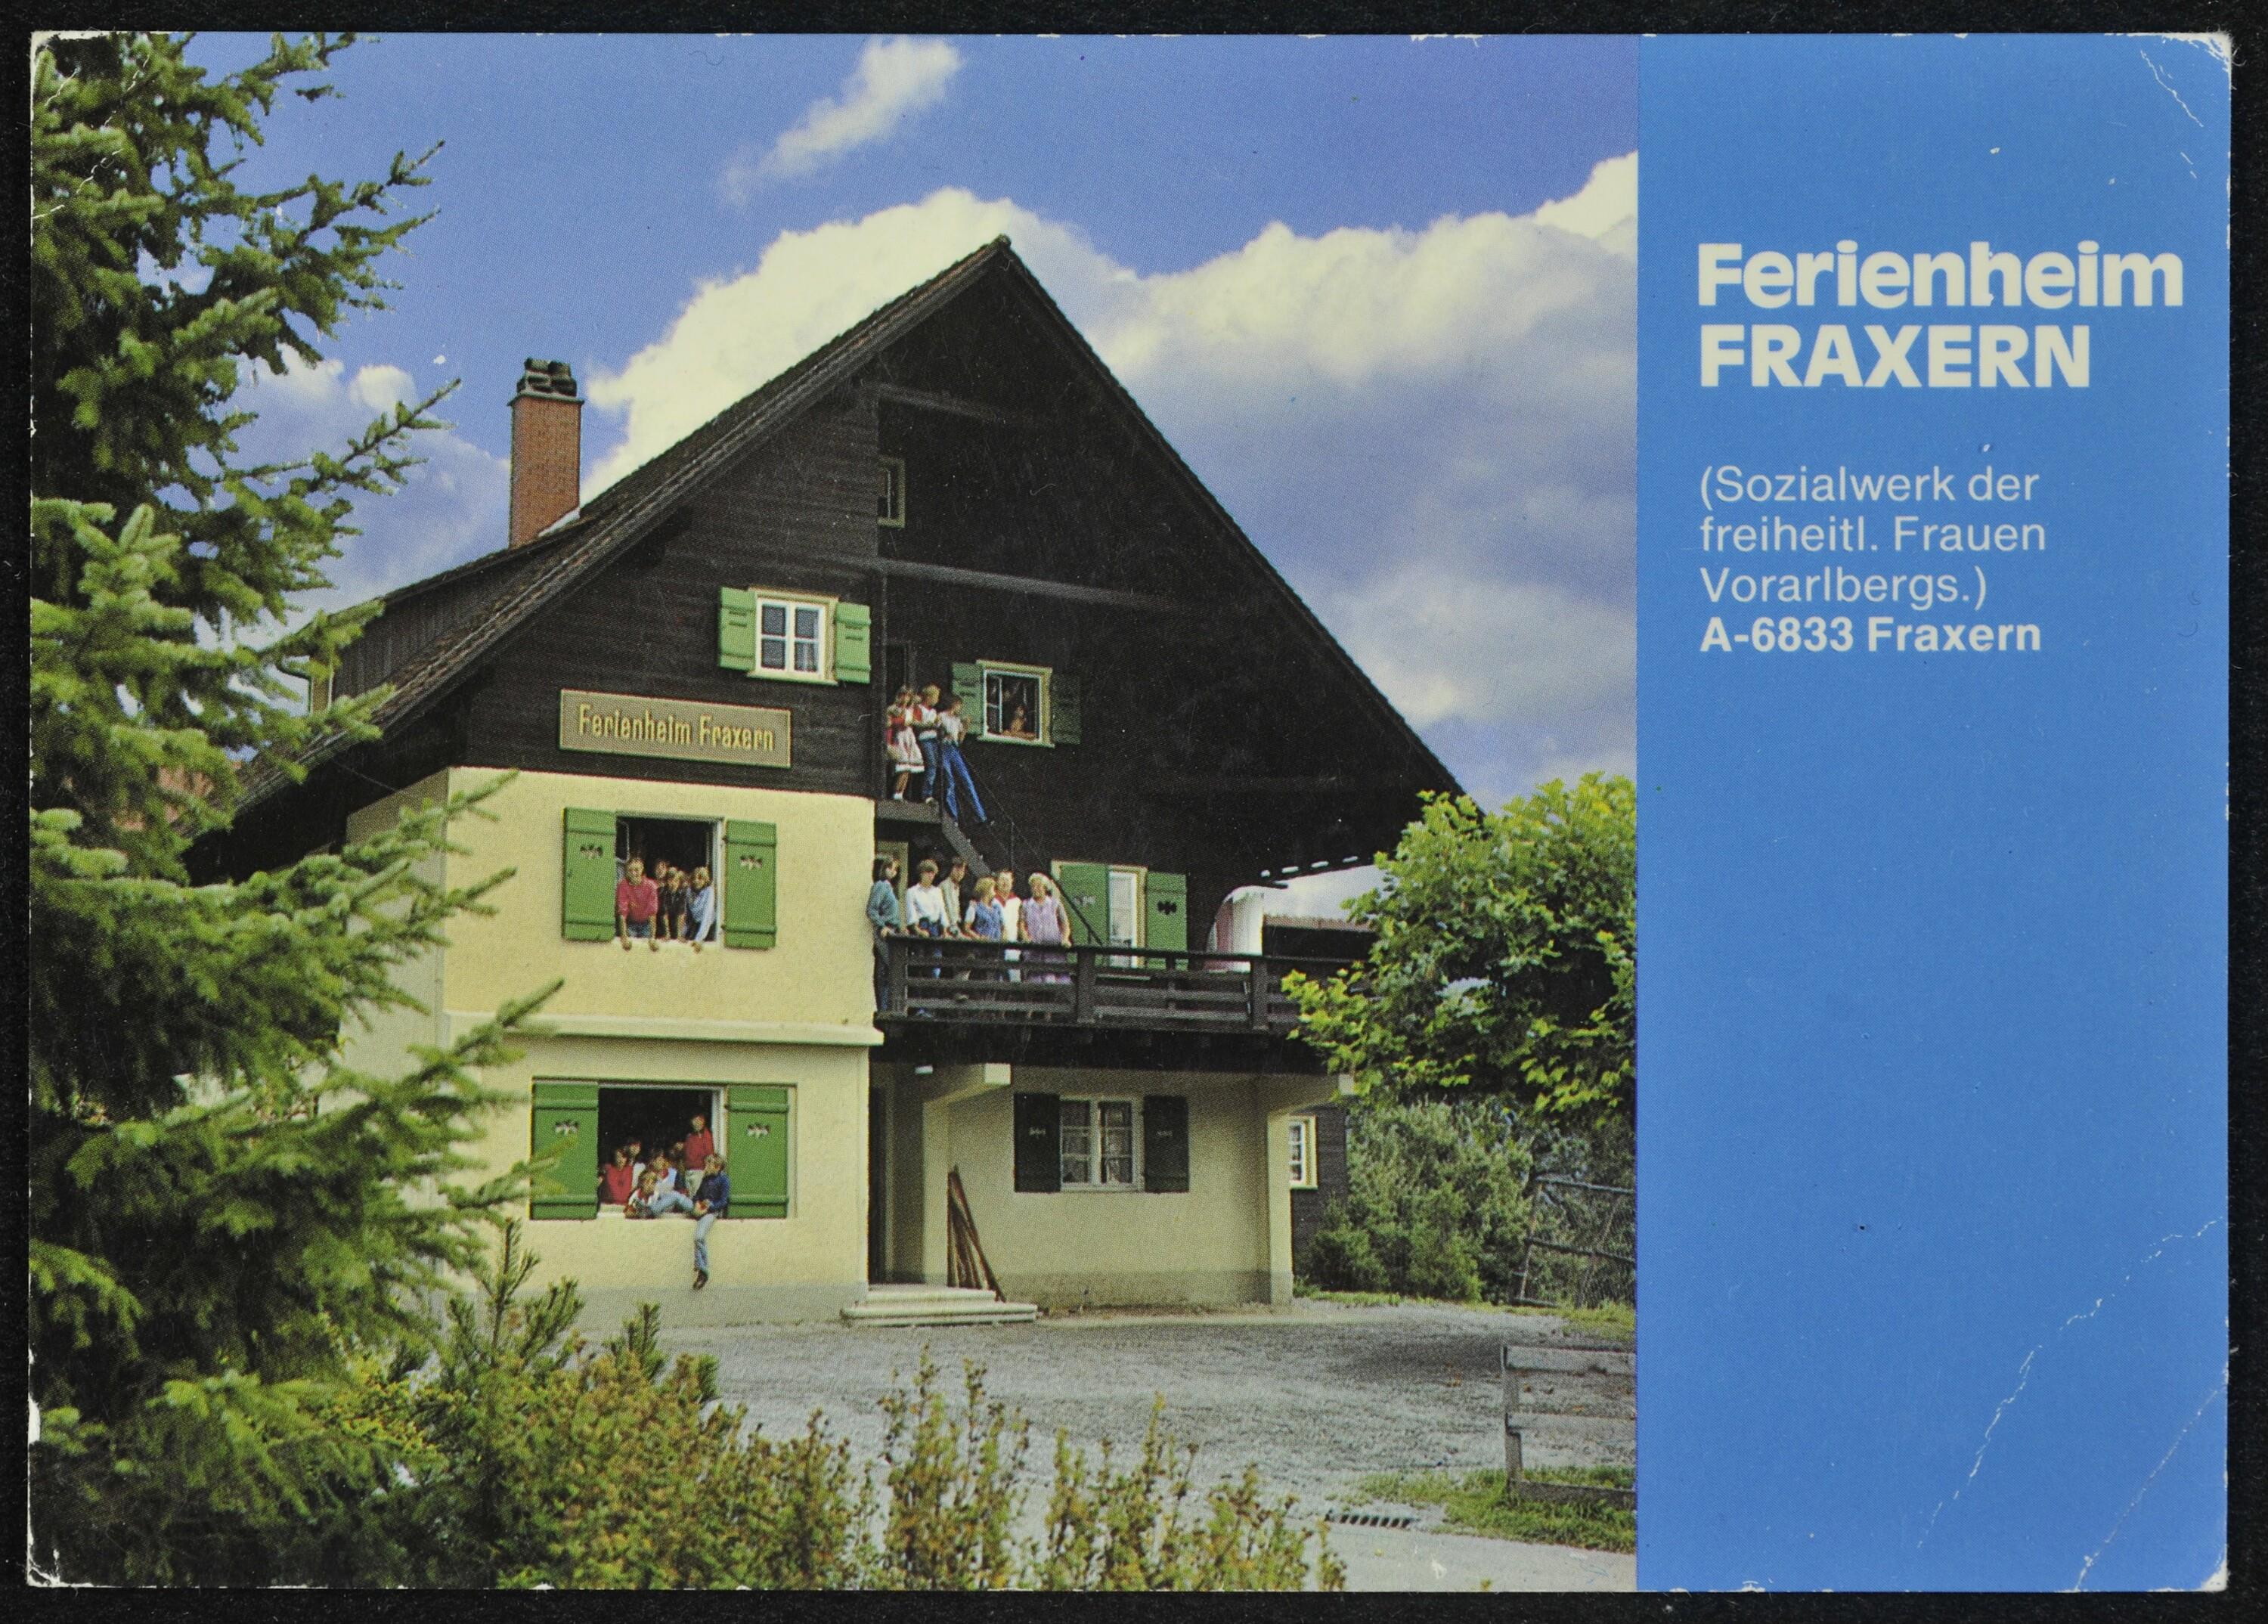 Ferienheim Fraxern (Sozialwerk der freiheitl. Frauen Vorarlbergs.) A-6833 Fraxern></div>


    <hr>
    <div class=